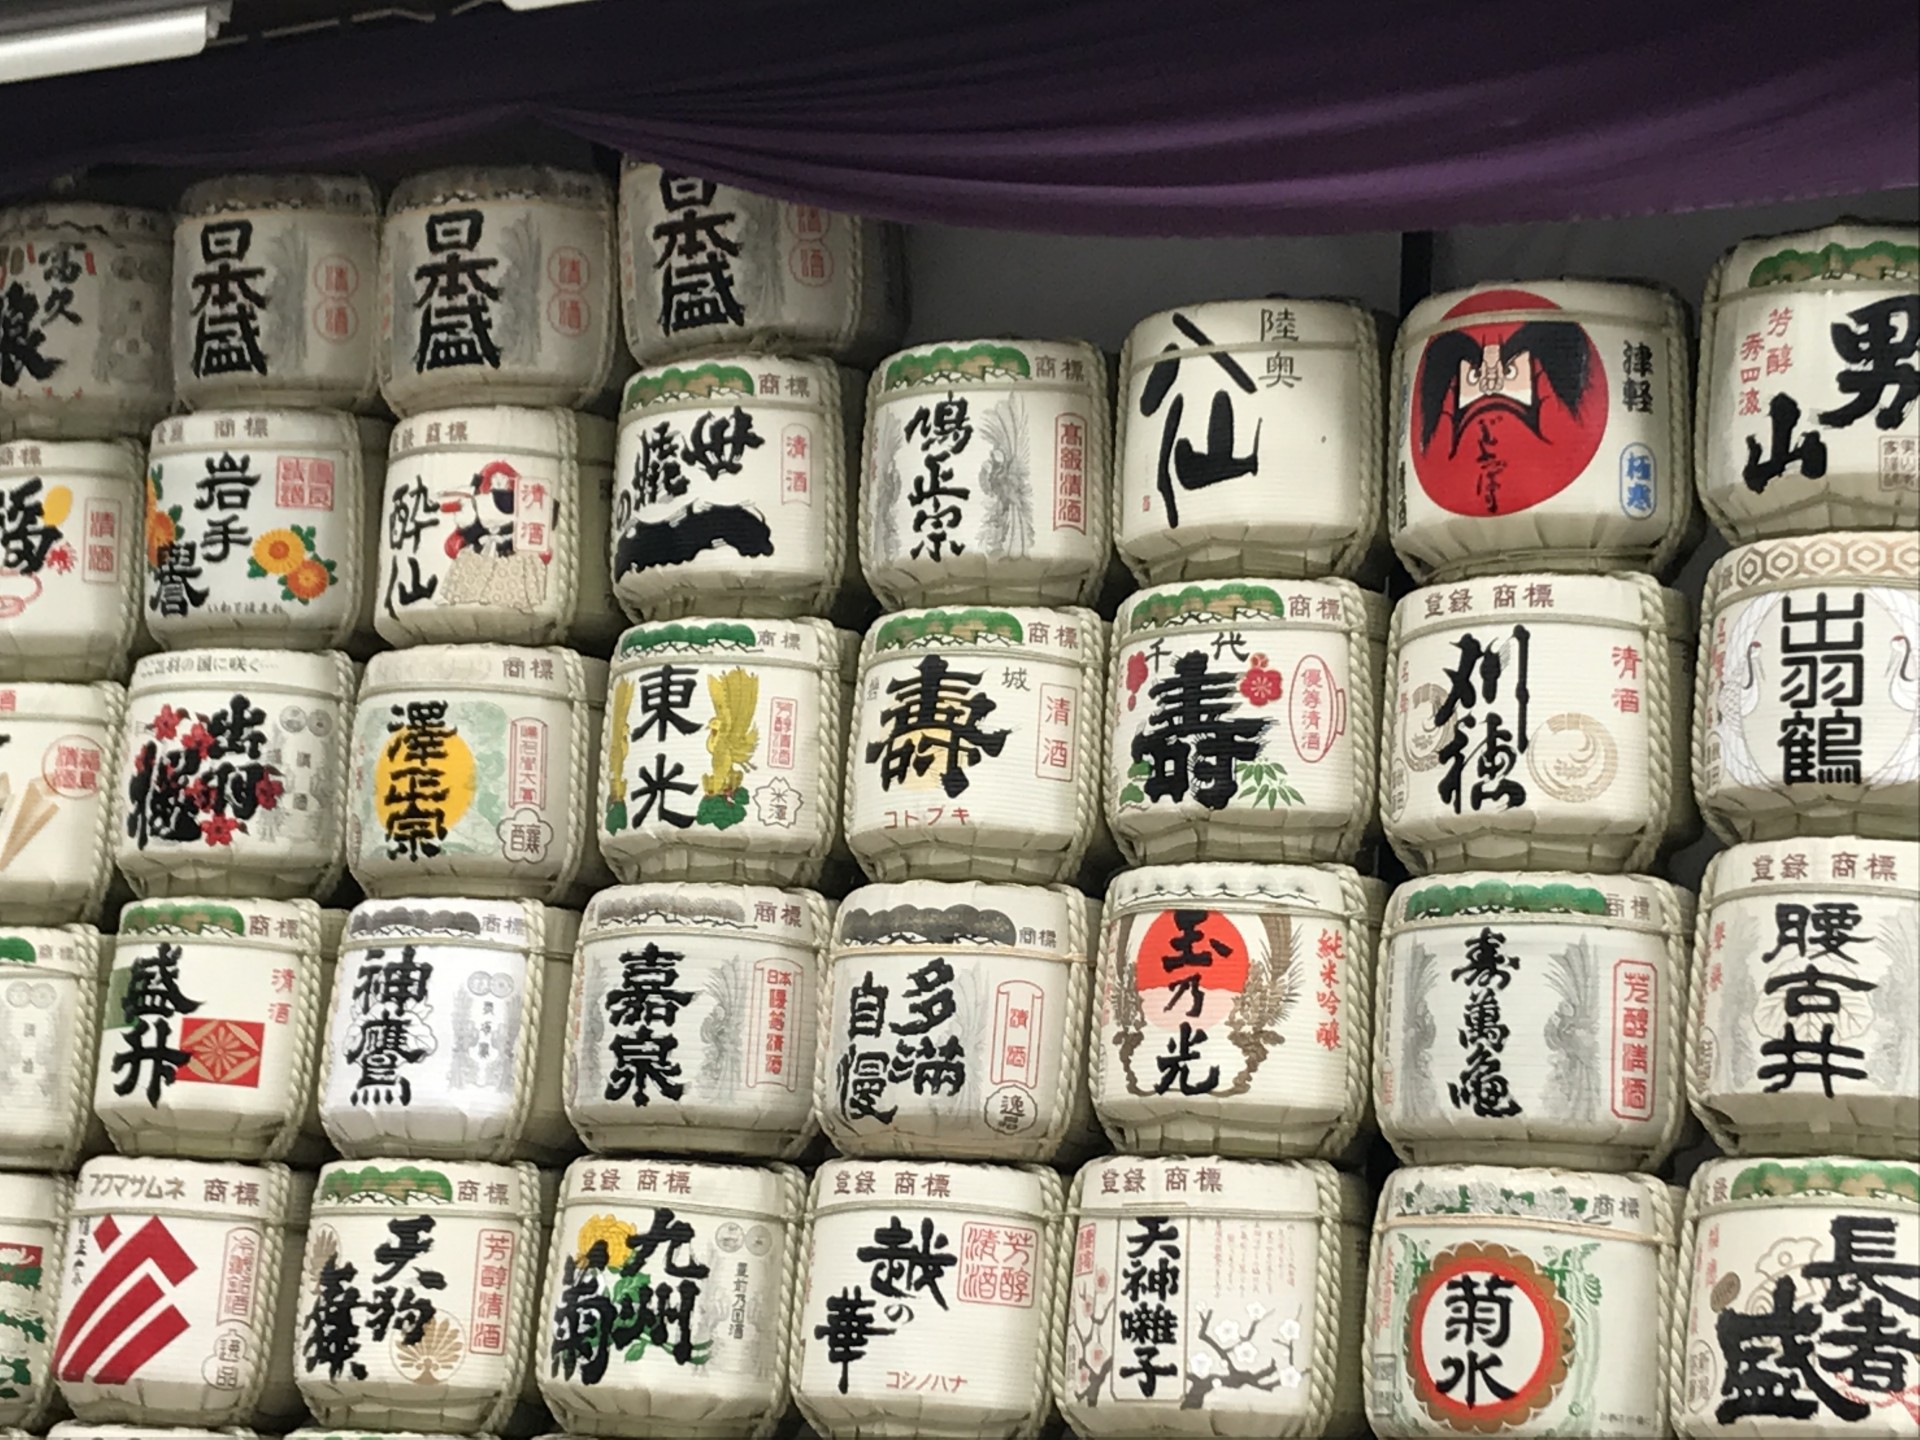 SAKE rižino vino napravljeno od fermentirane riže, putovanje u Japan